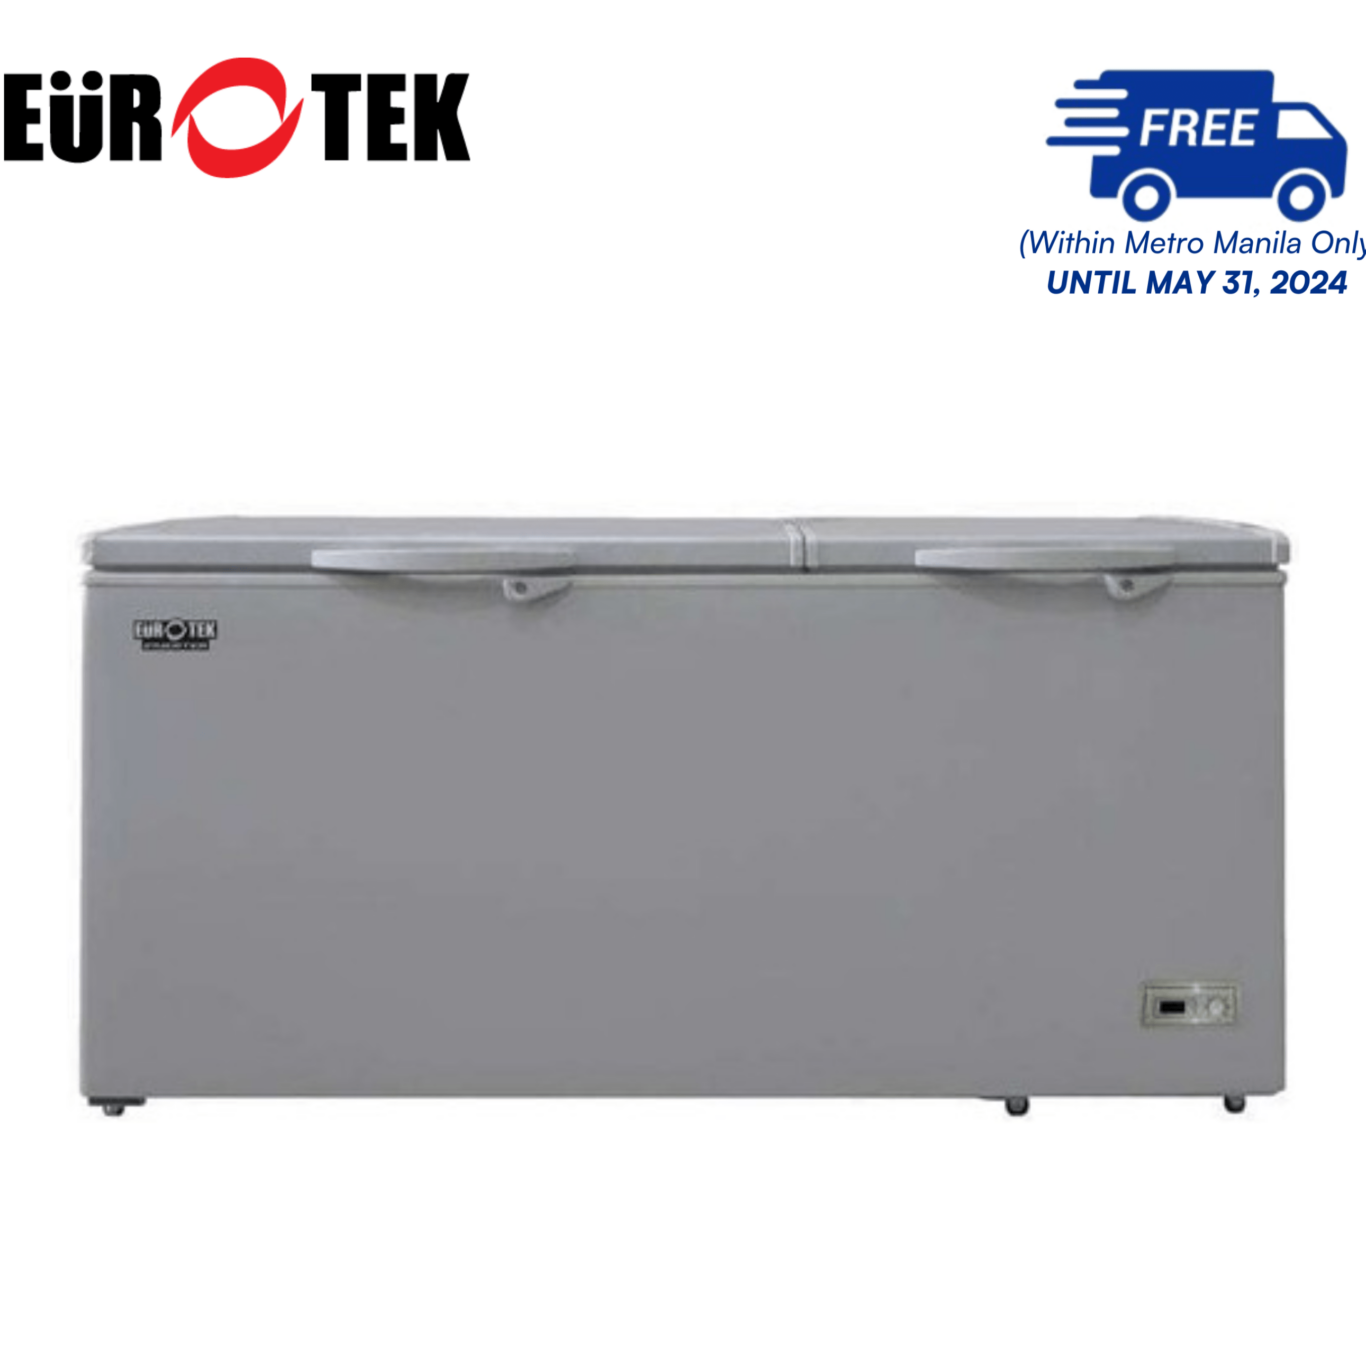 Eurotek ECF500IF